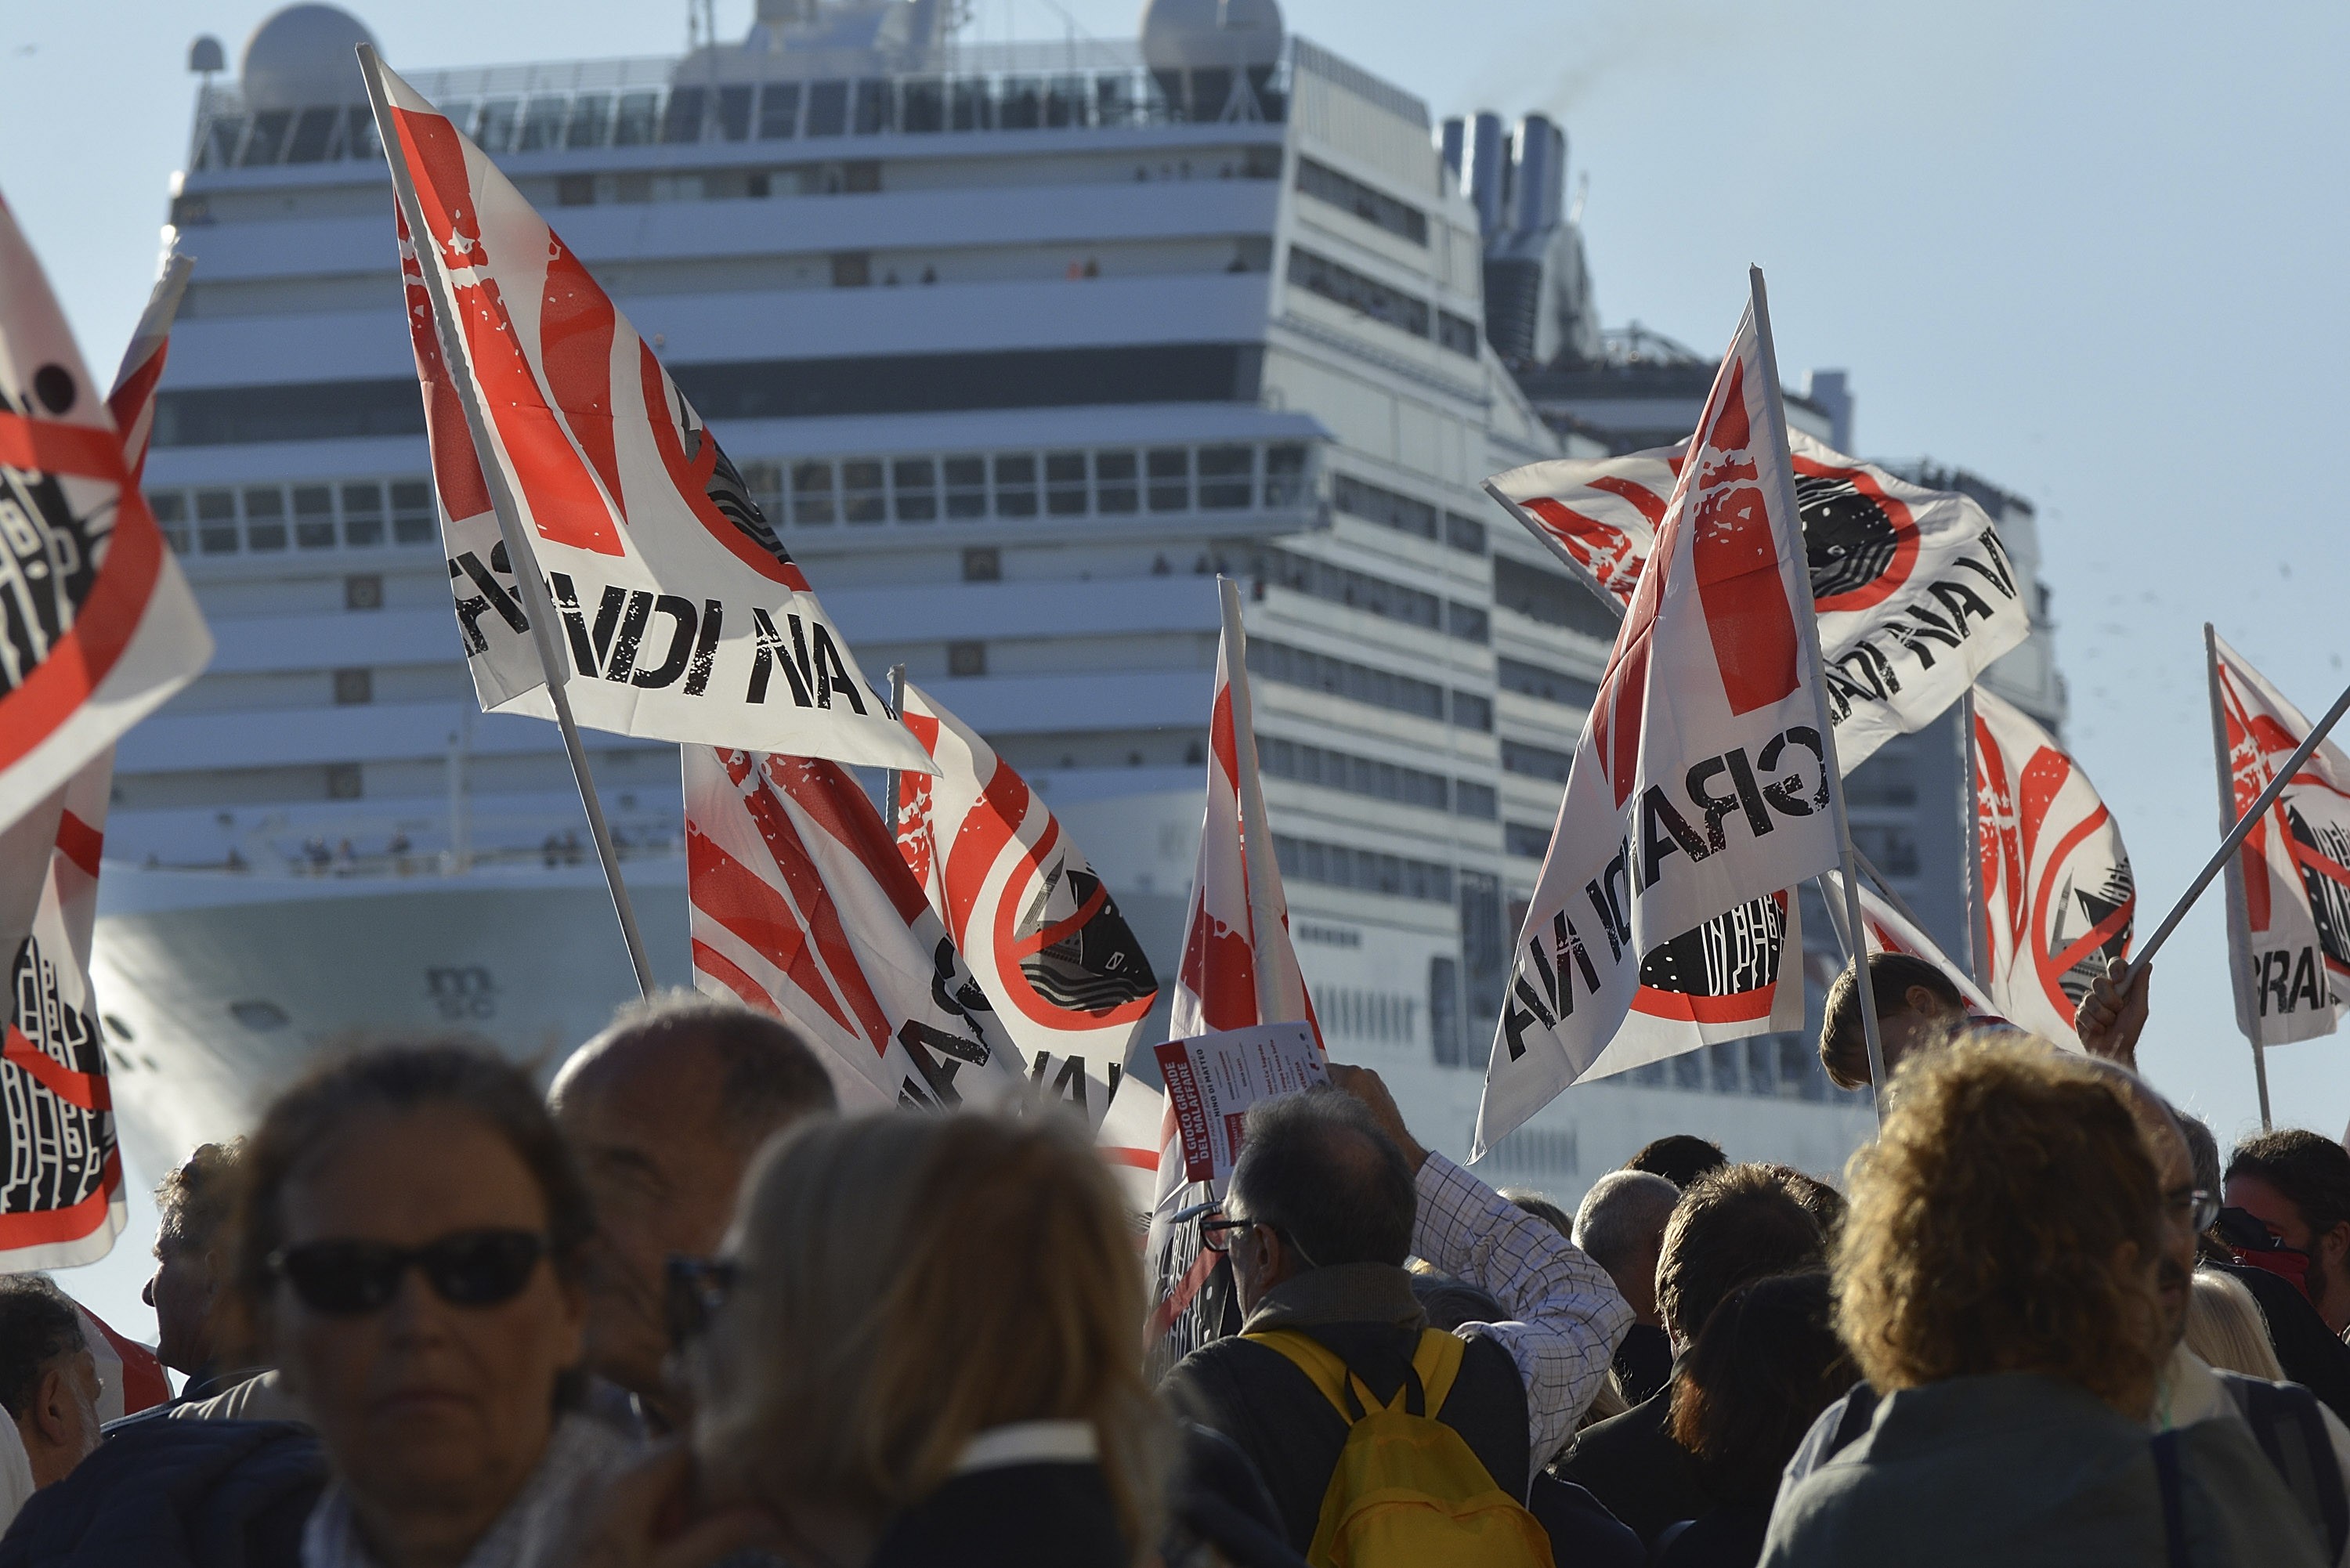 Protesto contra os cruzeiros em Veneza (Foto: Getty Images)